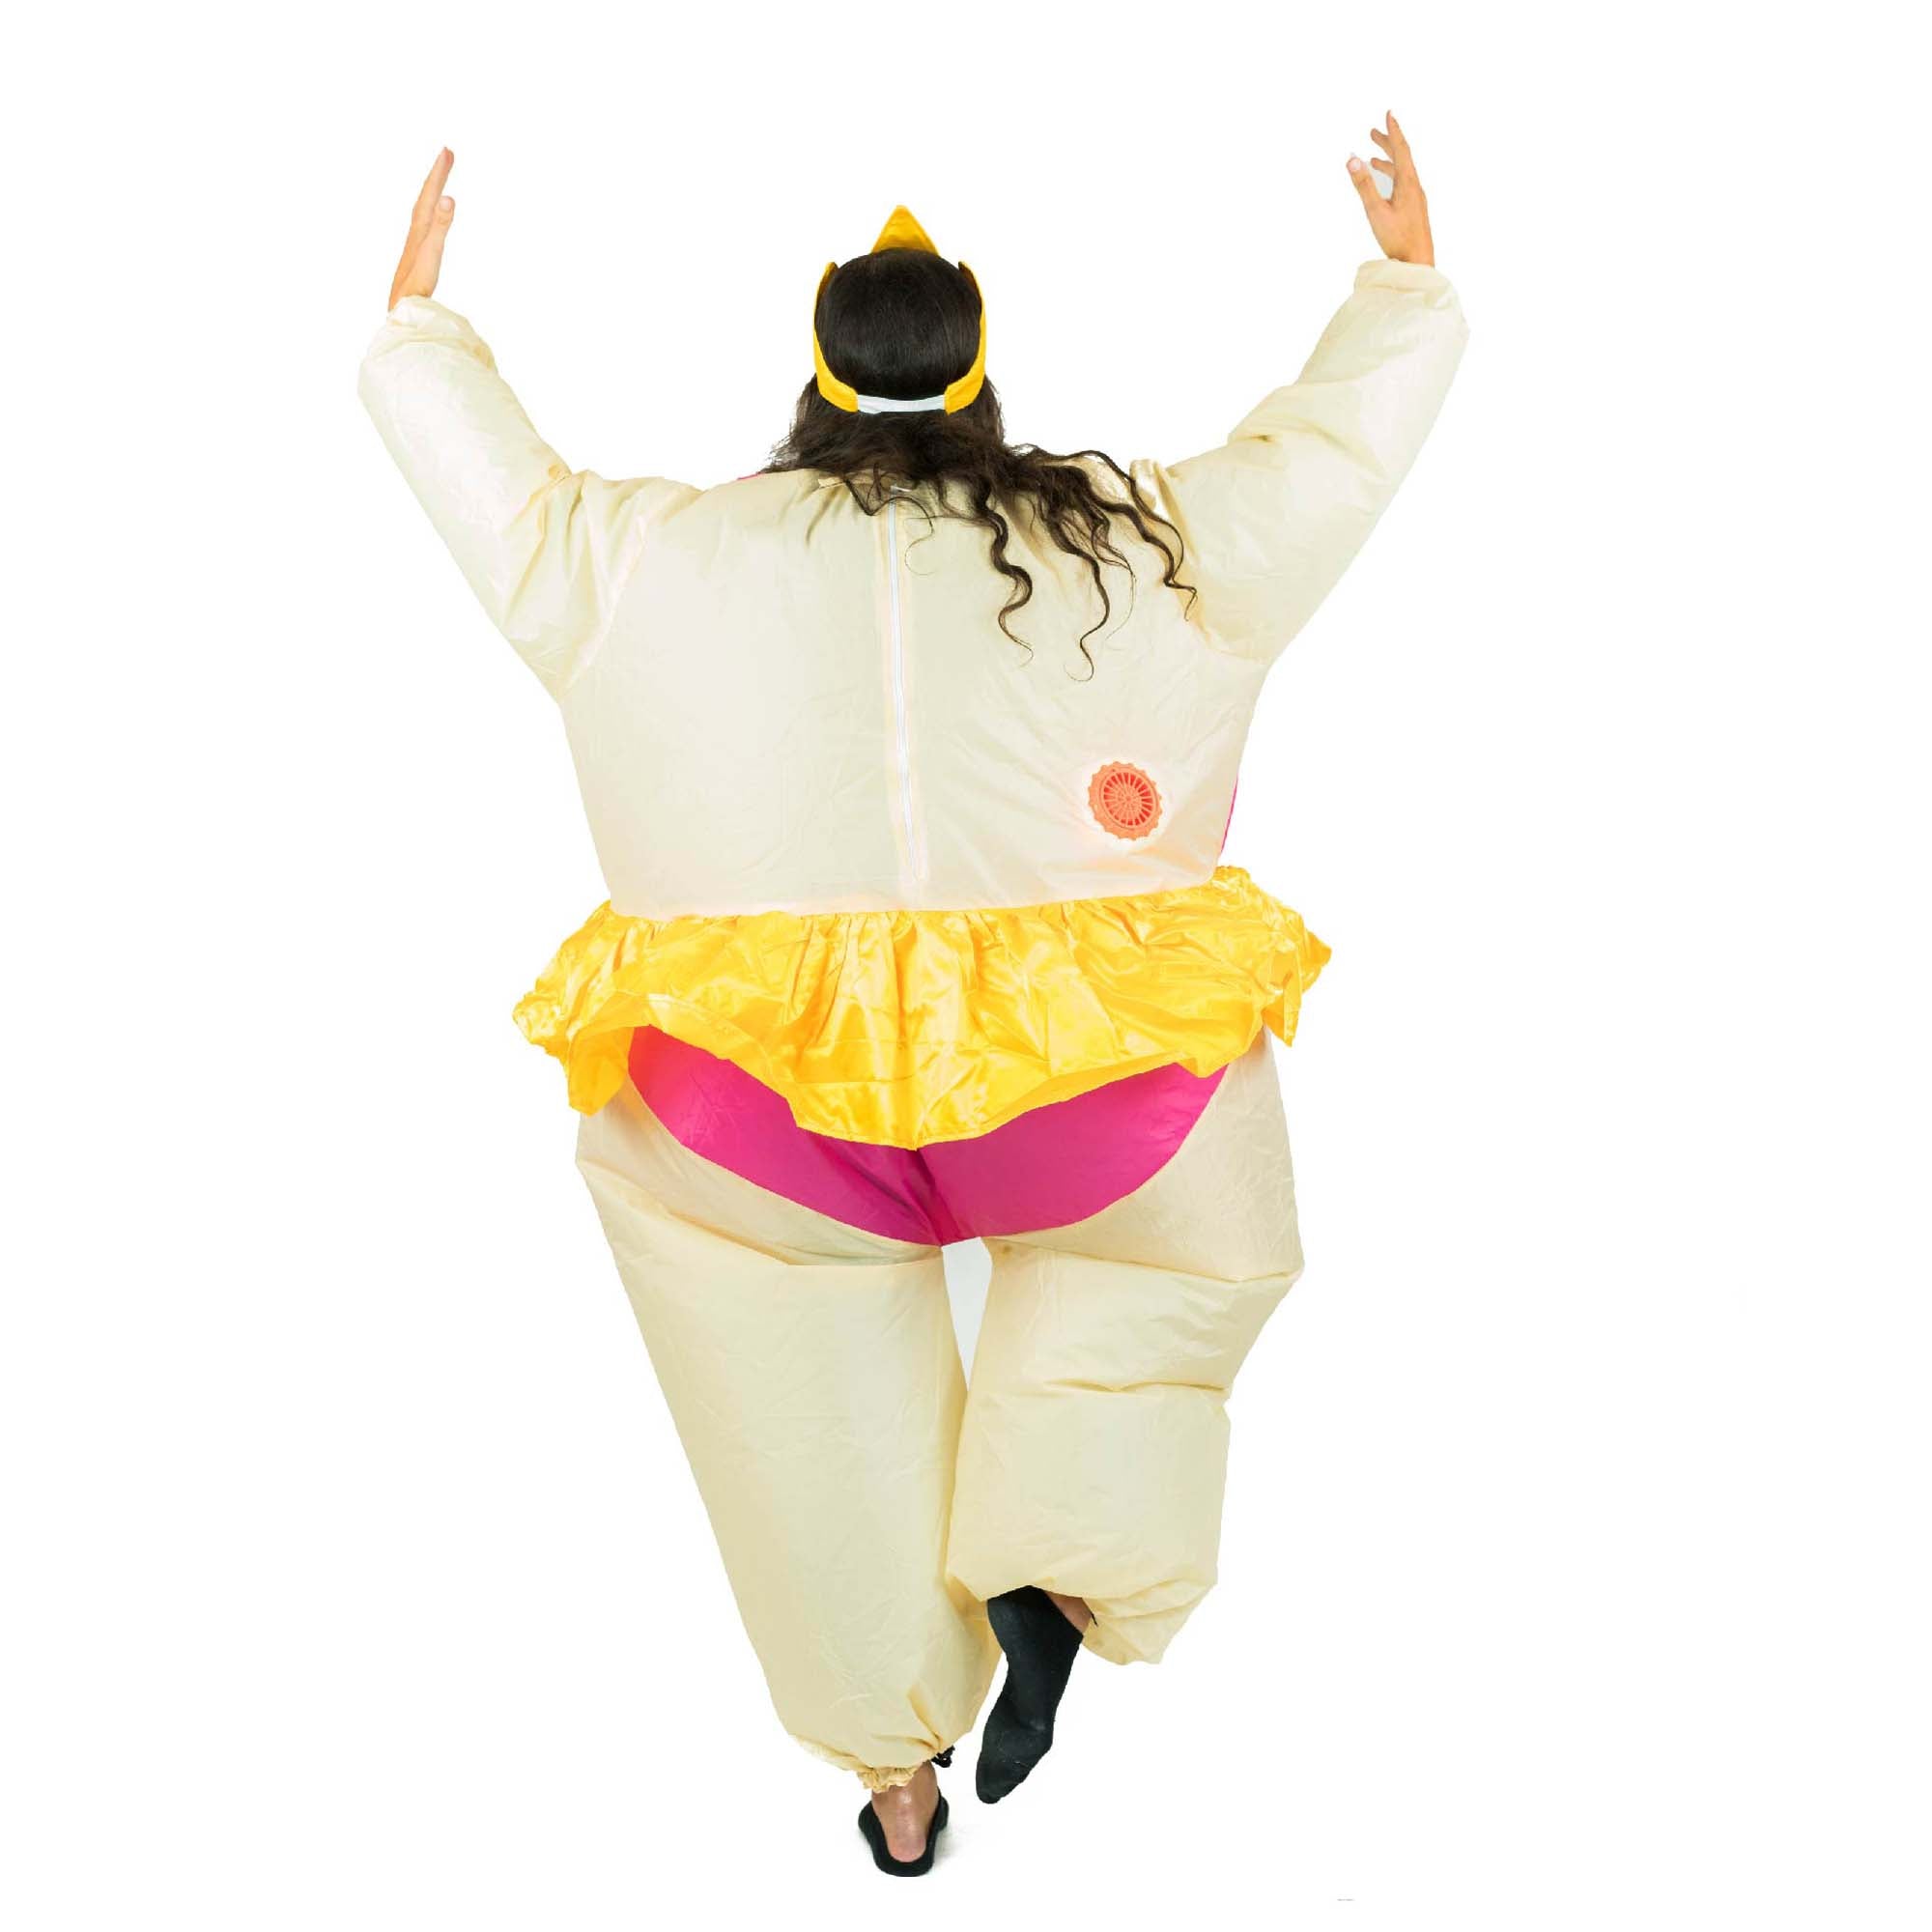 Déguisement adulte GENERIQUE Un beau Costume danseuse ballerine avec un  système gonflable déguisement fete accesssoire costume insolite drole